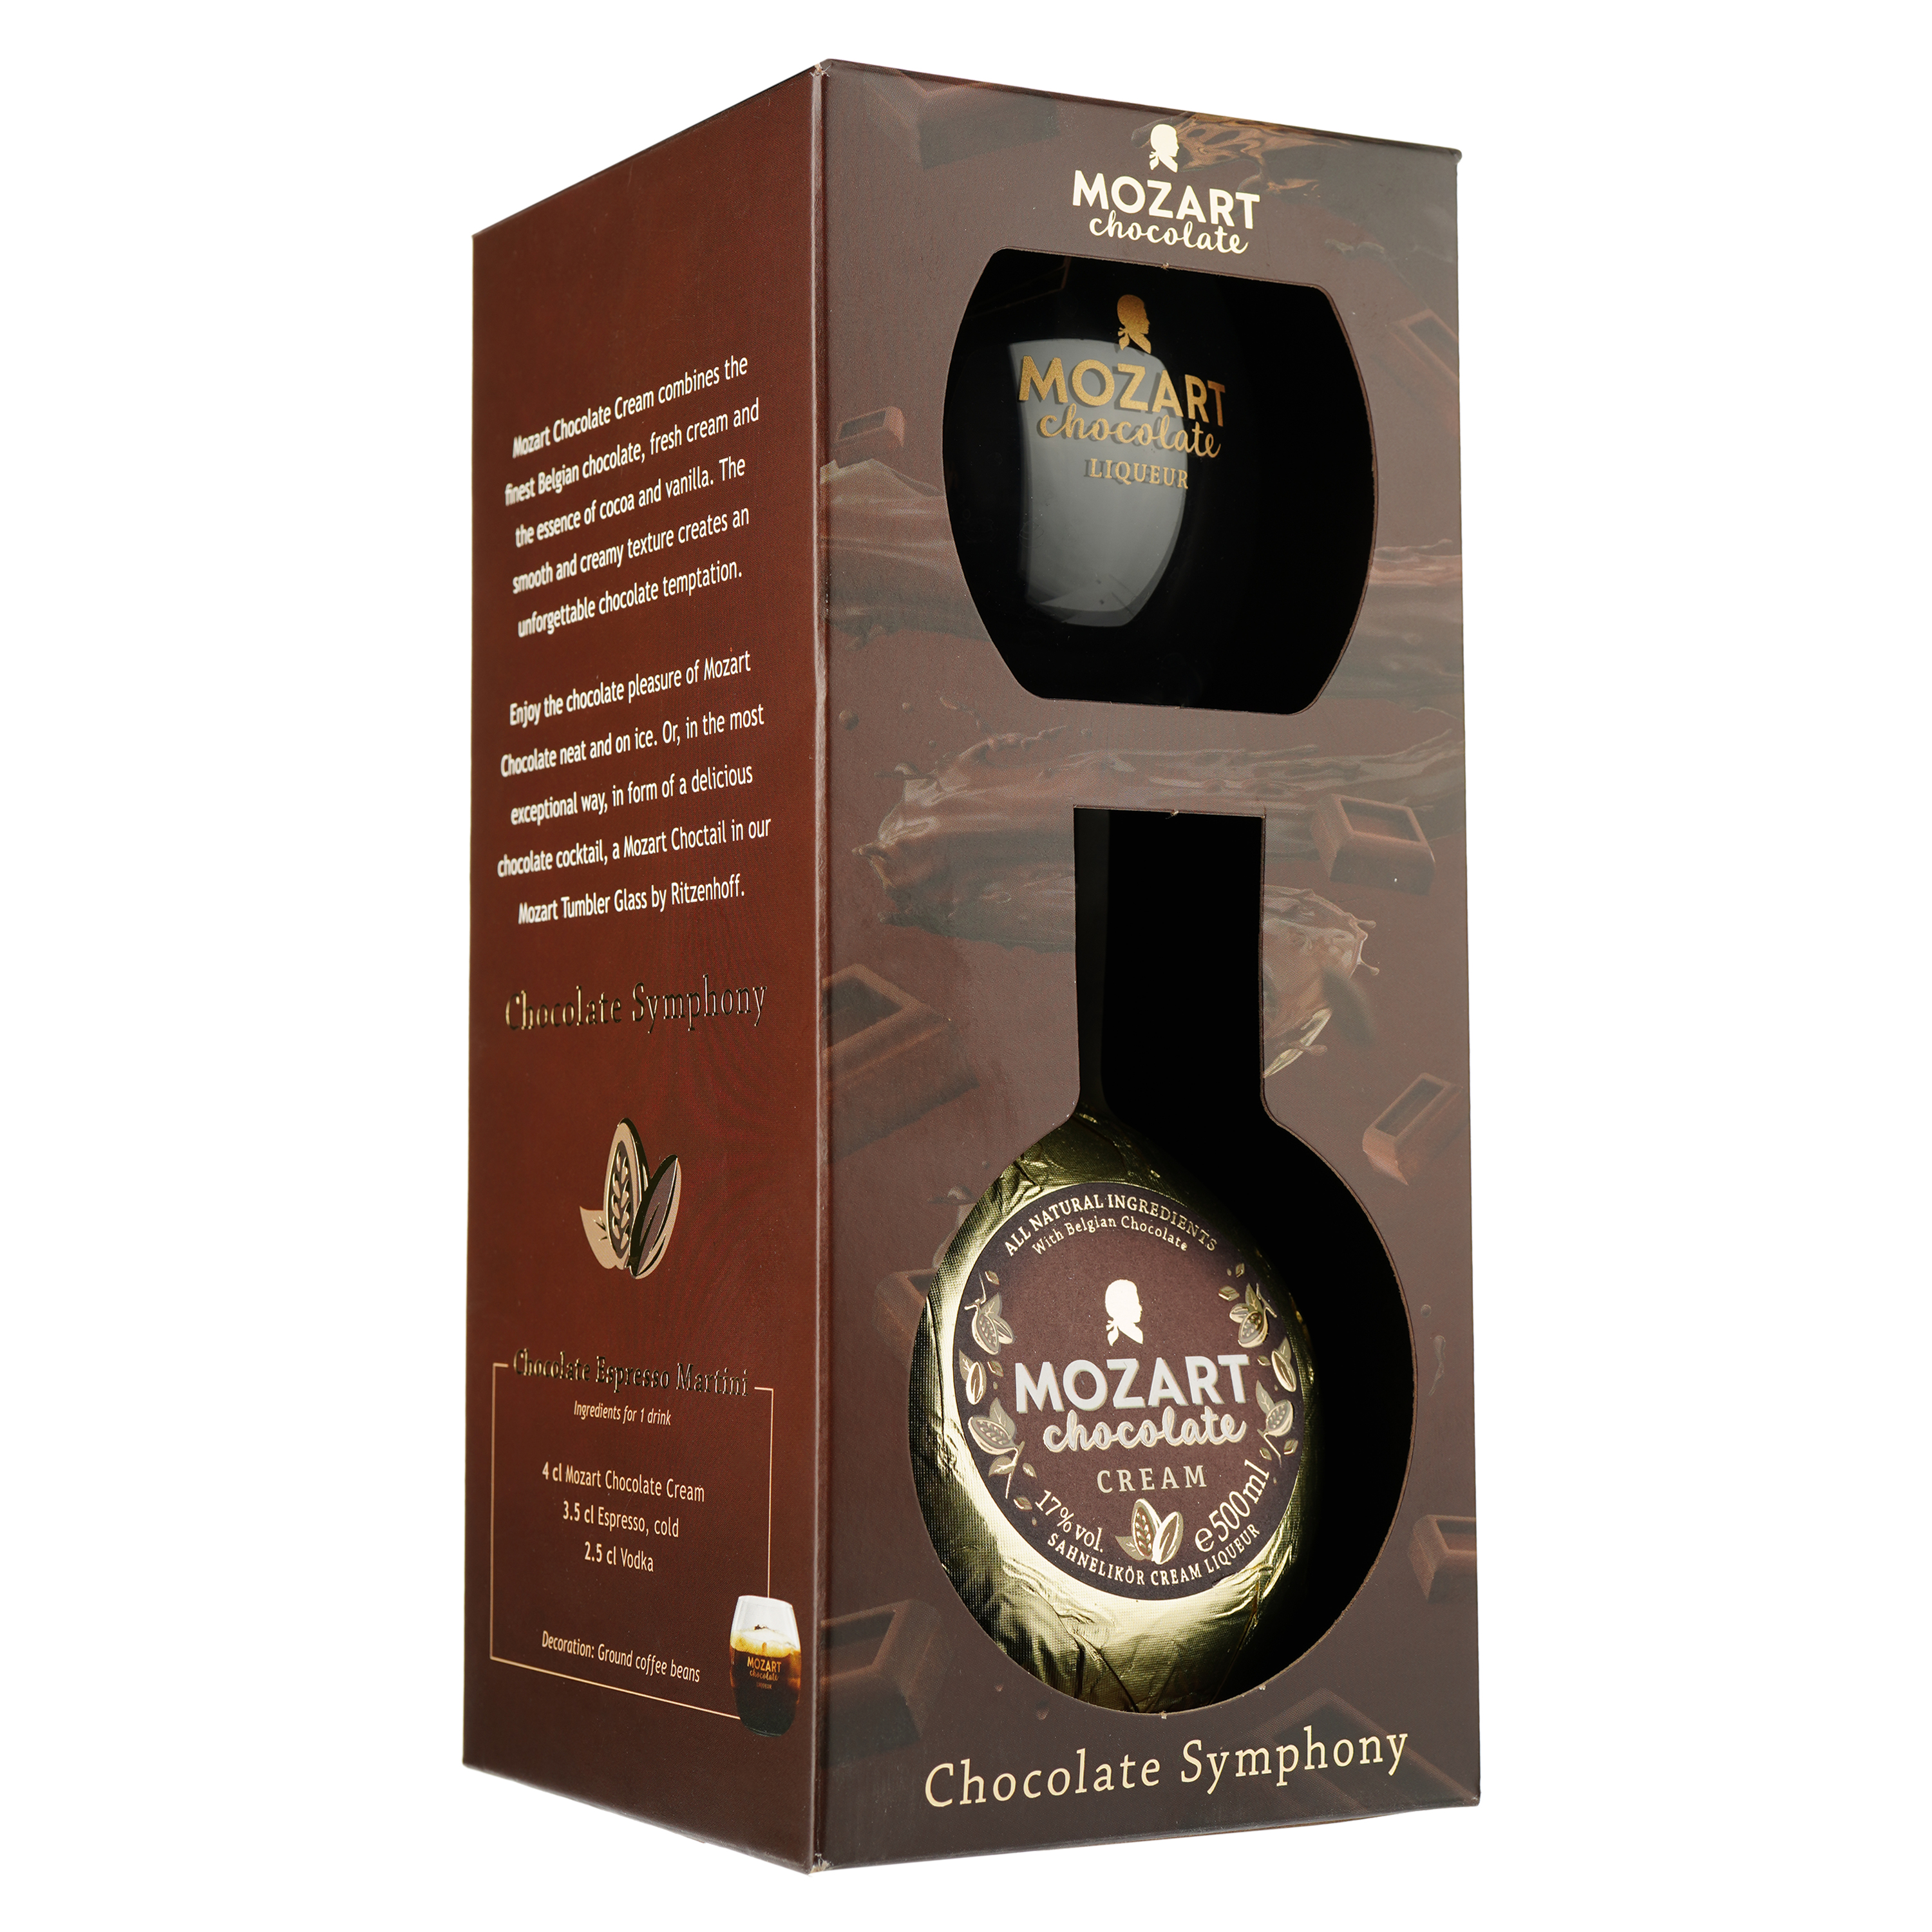 Ликер Mozart Chocolate Cream Gold, в подарочной упаковке, с бокалом, 17%, 0,5 л - фото 2